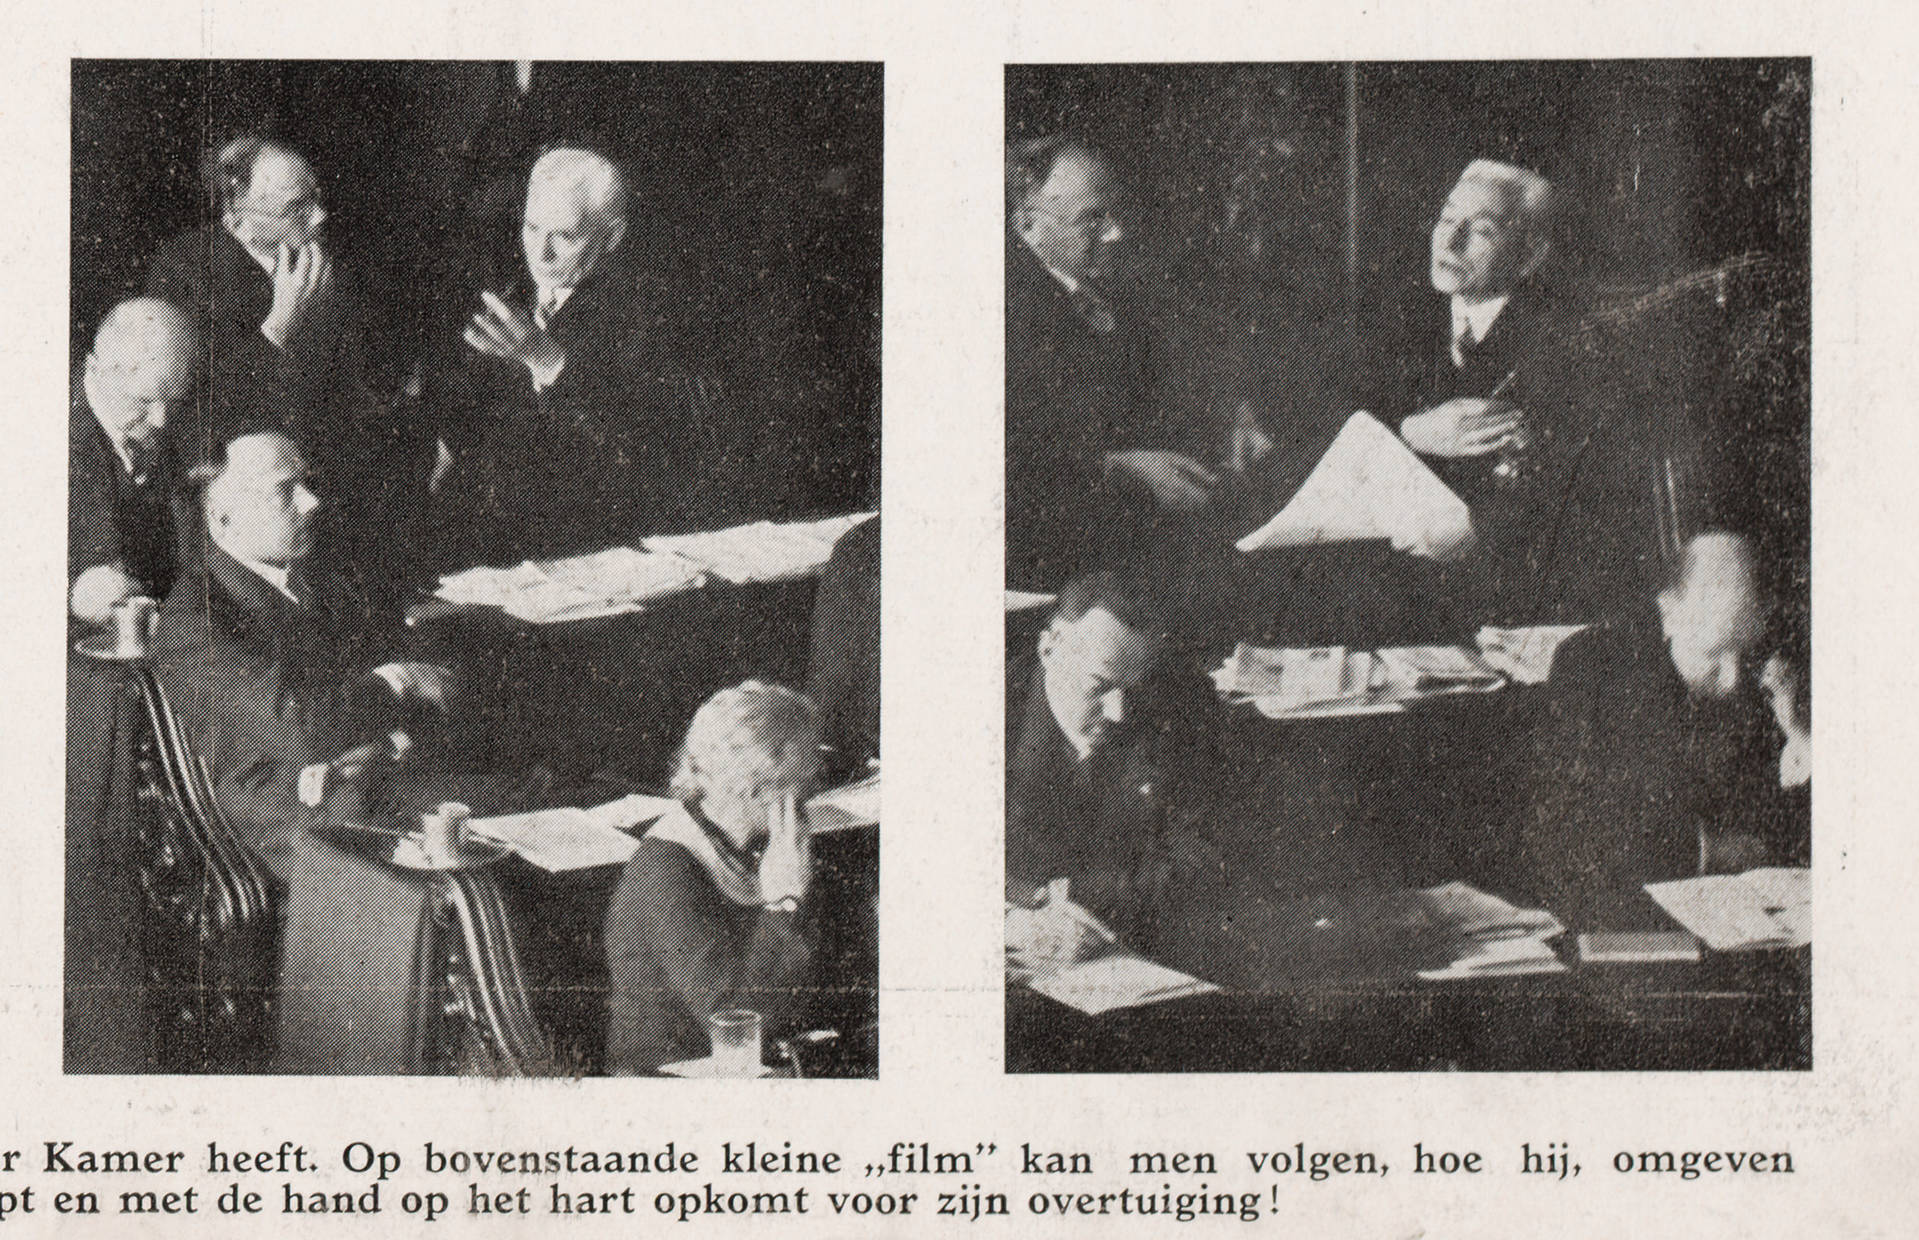 (Afbeelding 2) Het parlementaire duel in de Senaat. Foto Erich Salomon, in: Het Leven, 29 feb. 1936.